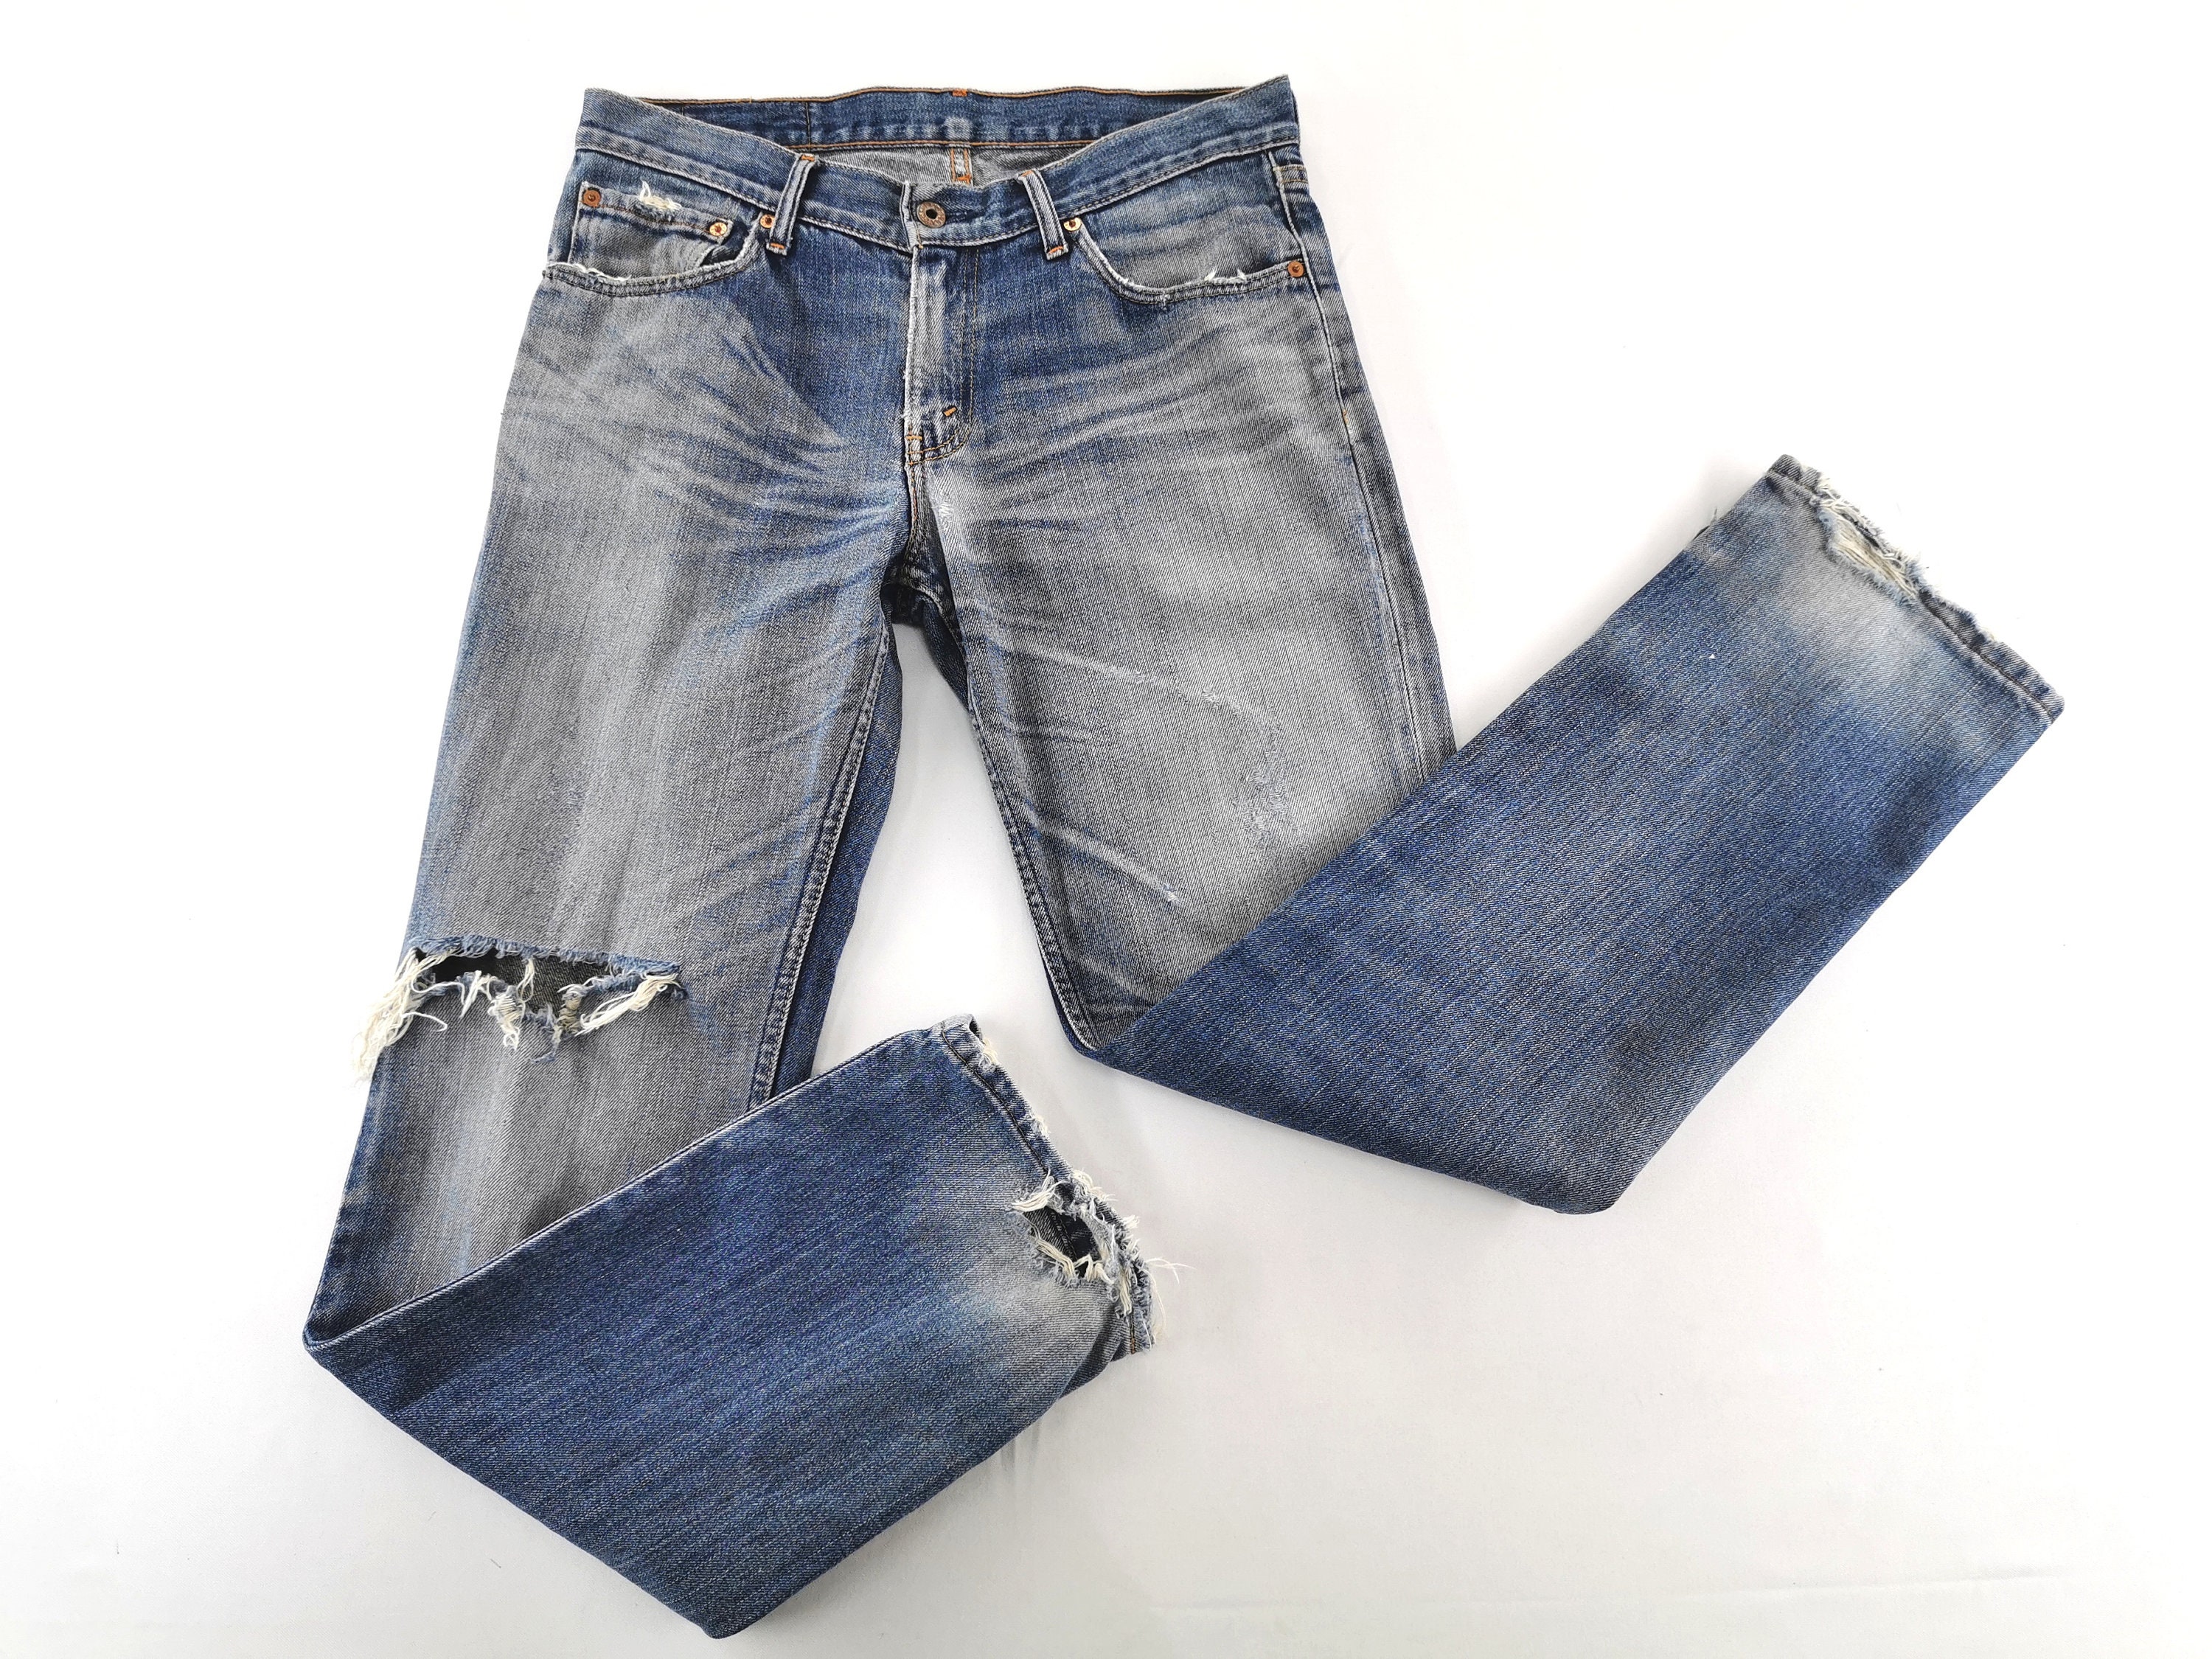 Levis 552 Jeans Distressed Destroy Vintage Size 32 Levis 552 | Etsy